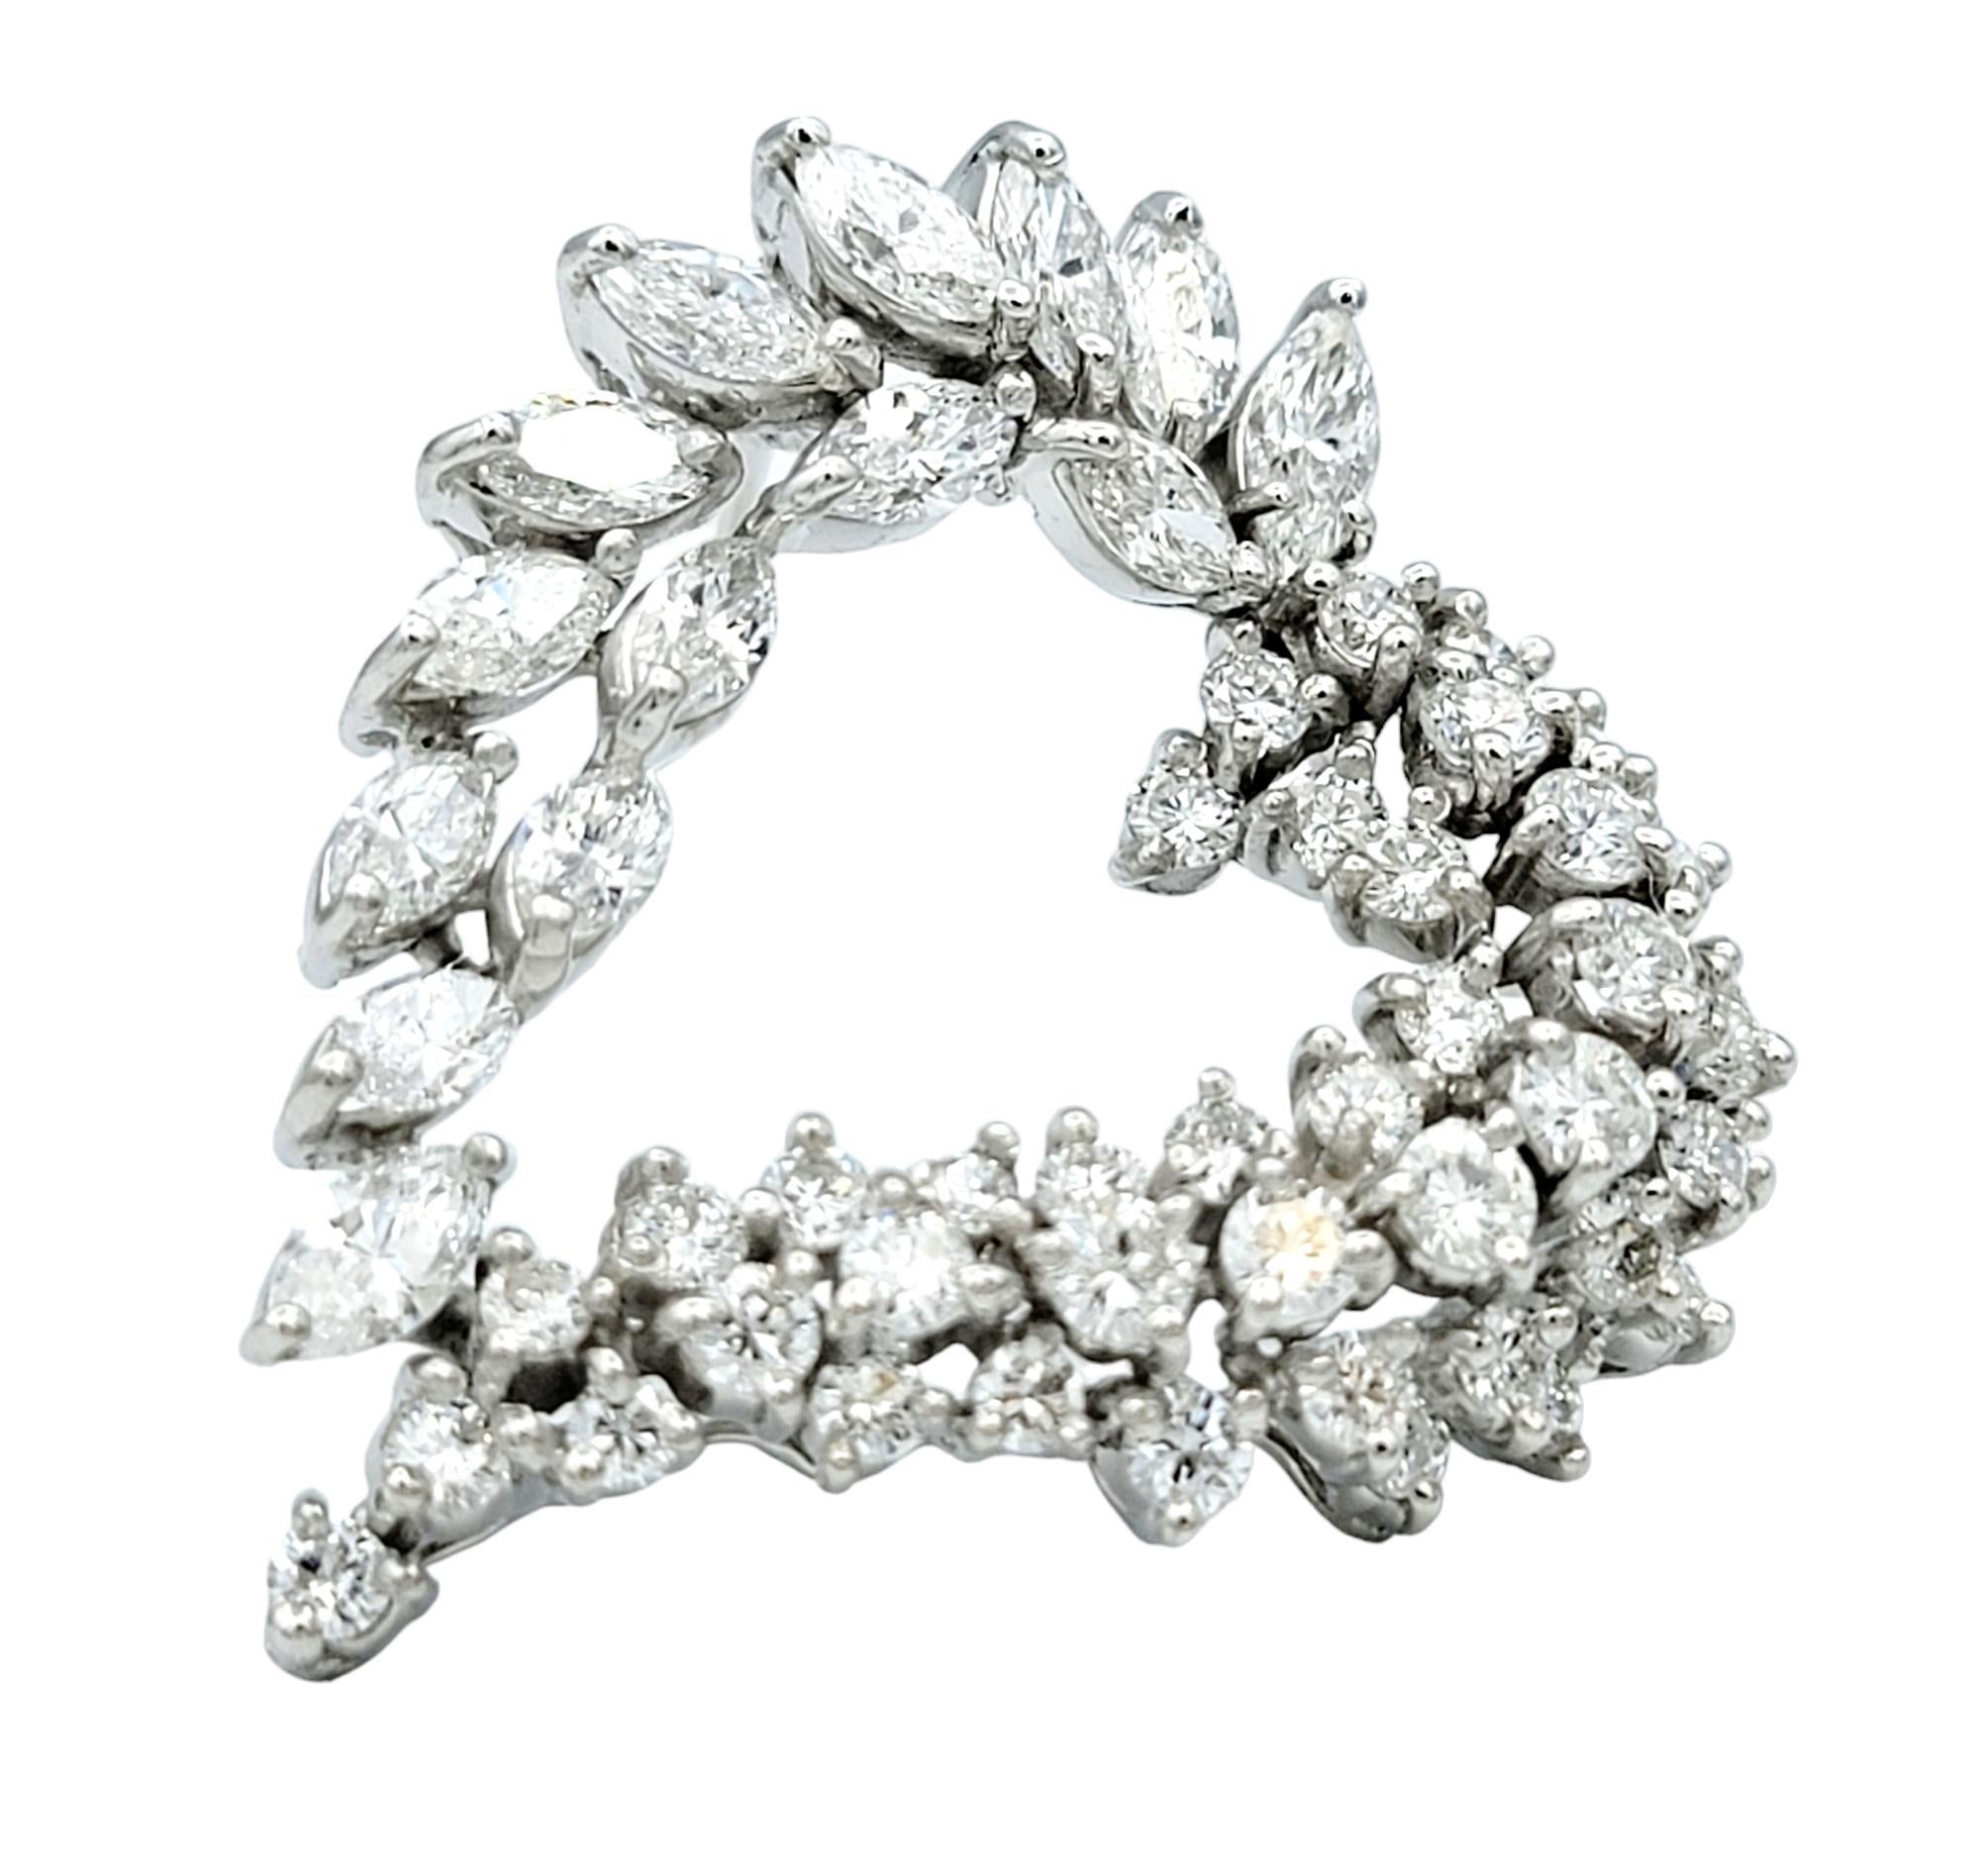 Cette exquise broche ou pendentif en diamants à cœur ouvert est un éblouissant témoignage d'élégance intemporelle et de savoir-faire raffiné. Sertie dans de l'or blanc lustré 14 carats, la broche présente un mélange harmonieux de diamants marquises